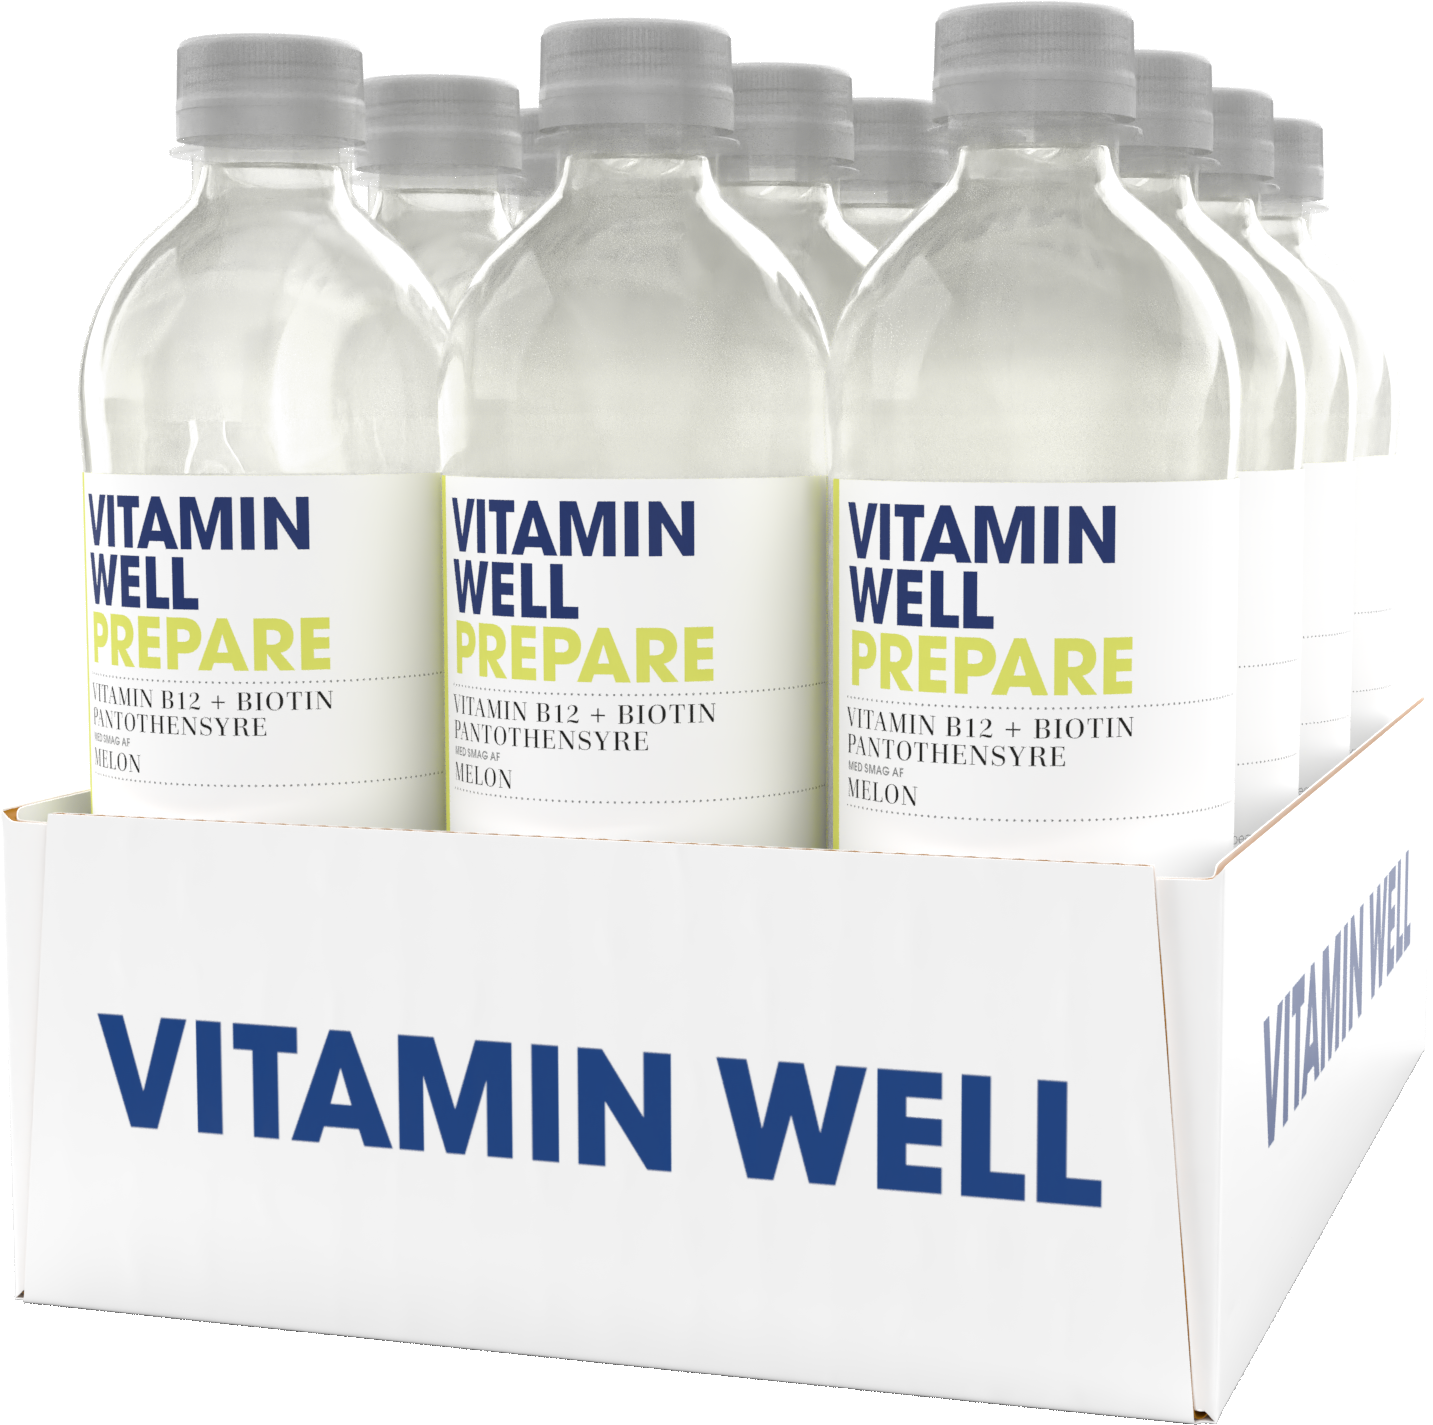 Brug Vitamin Well Prepare (12x500ml) til en forbedret oplevelse